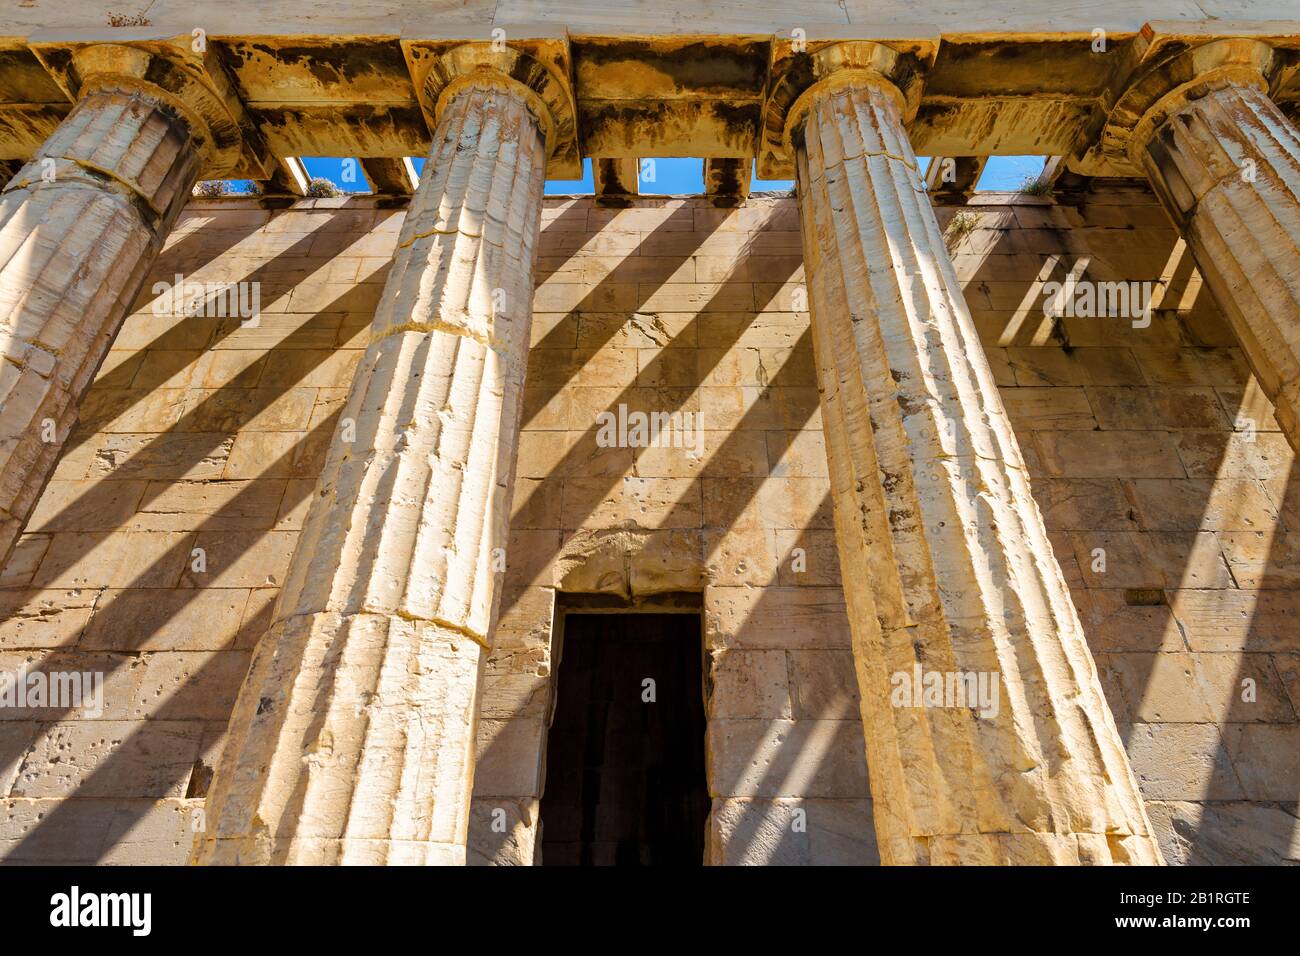 Tempio di Hephaesto primo piano, Atene, Grecia. E' un antico e famoso punto di riferimento di Atene. Antico monumento greco con colonne doriche nel centro di Atene. Foto Stock